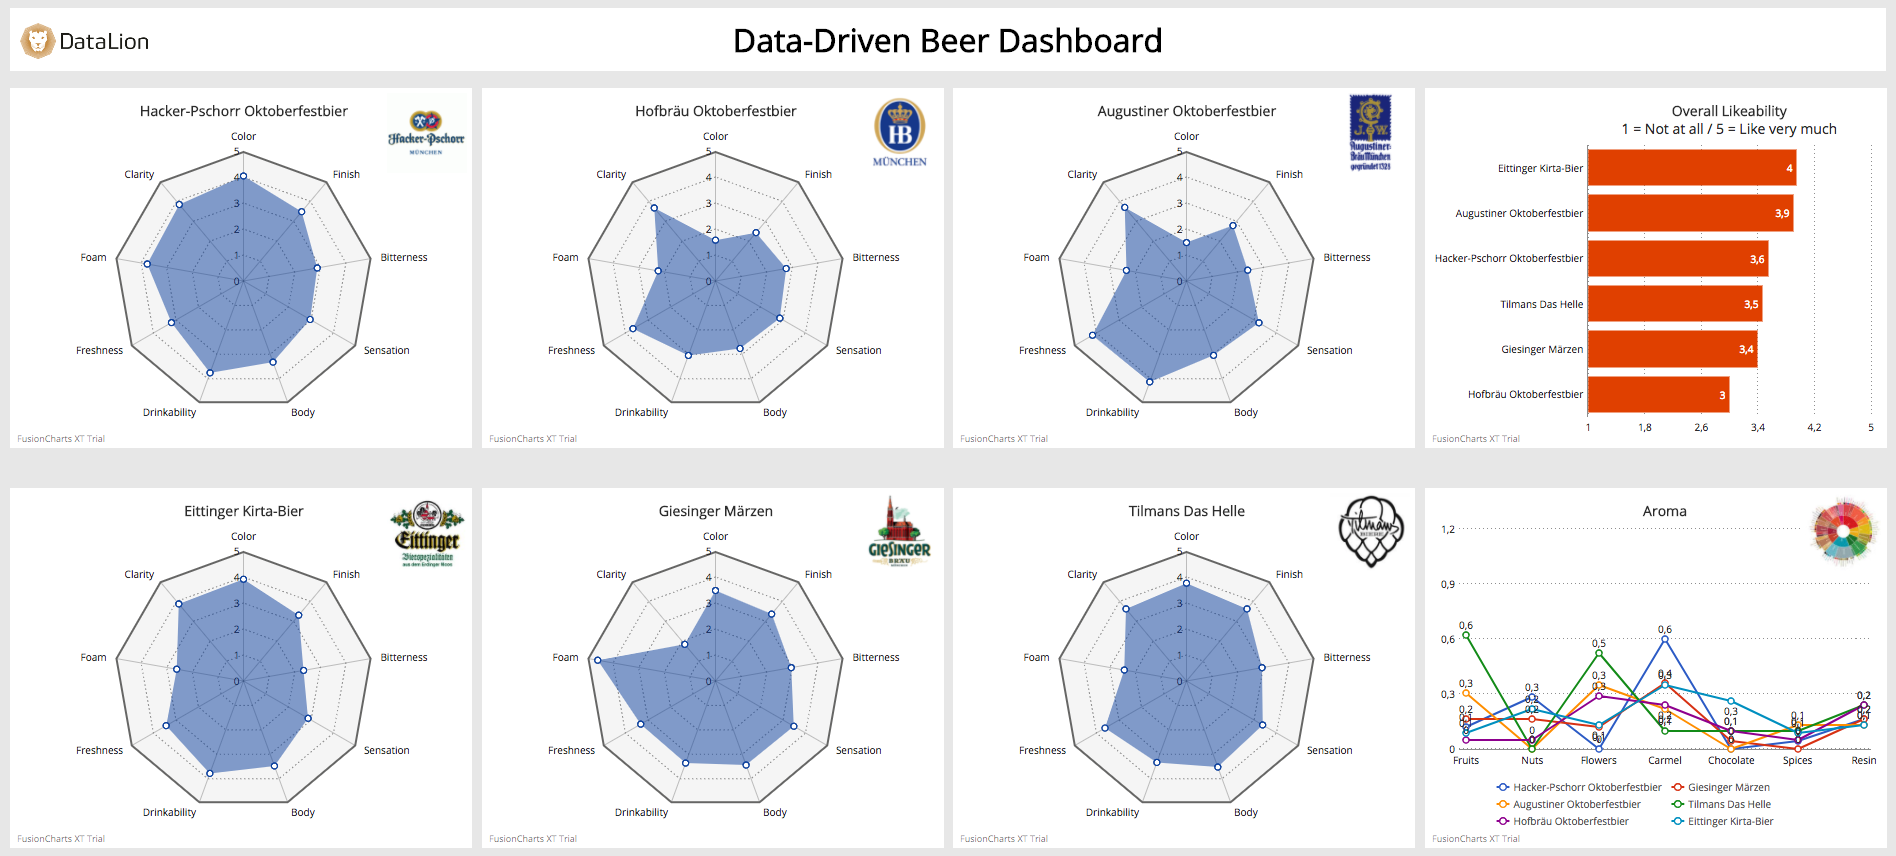 Data-Driven Beer Dashboard